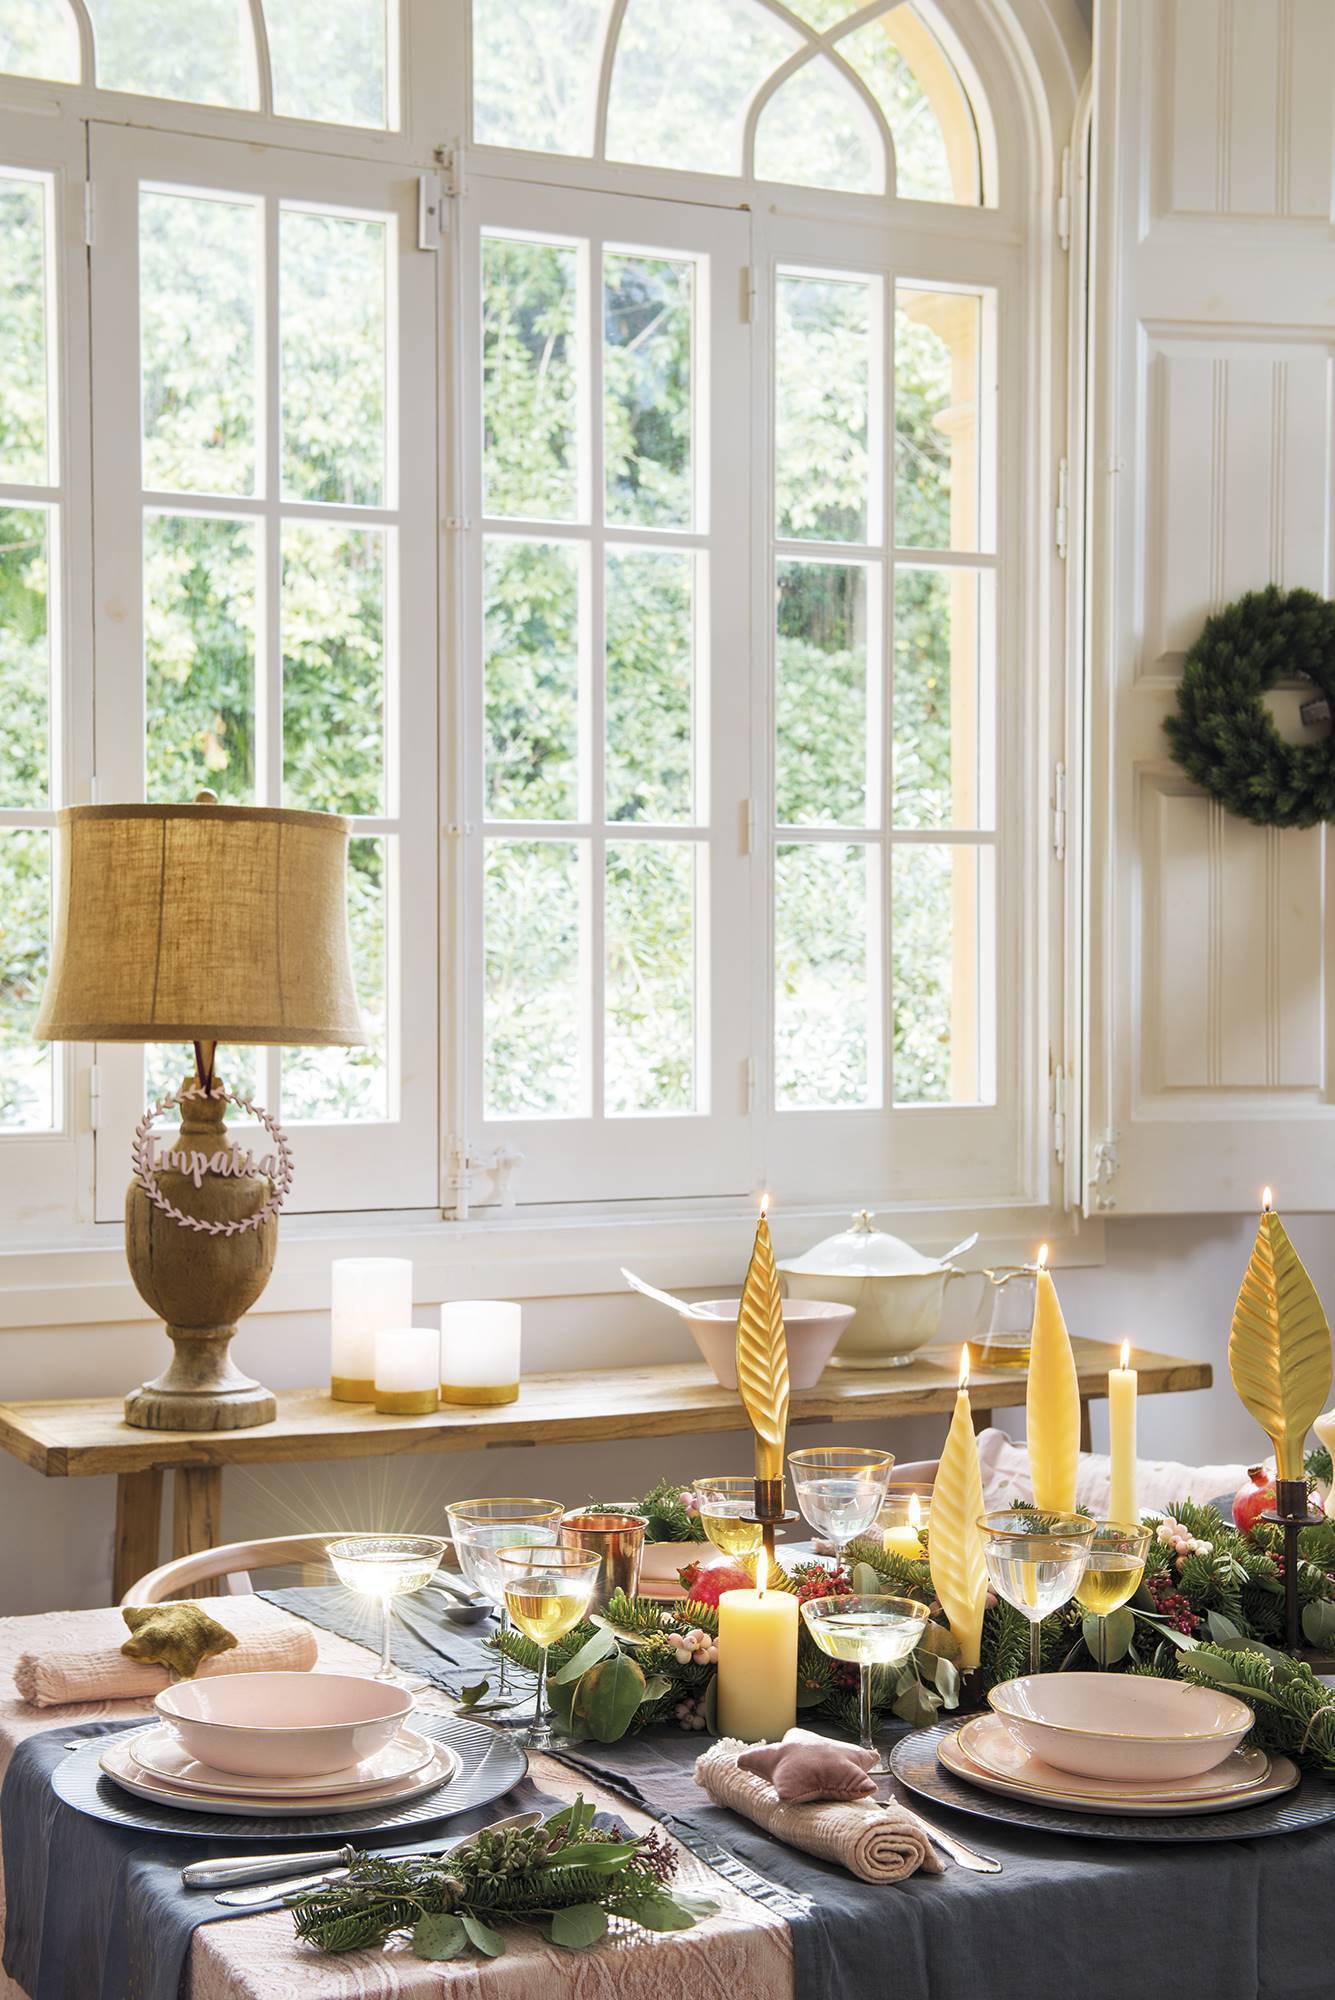 Căn nhà nổi bật với màu mận chín ấm áp, dịu dàng trang trí Giáng sinh - Ảnh 4.